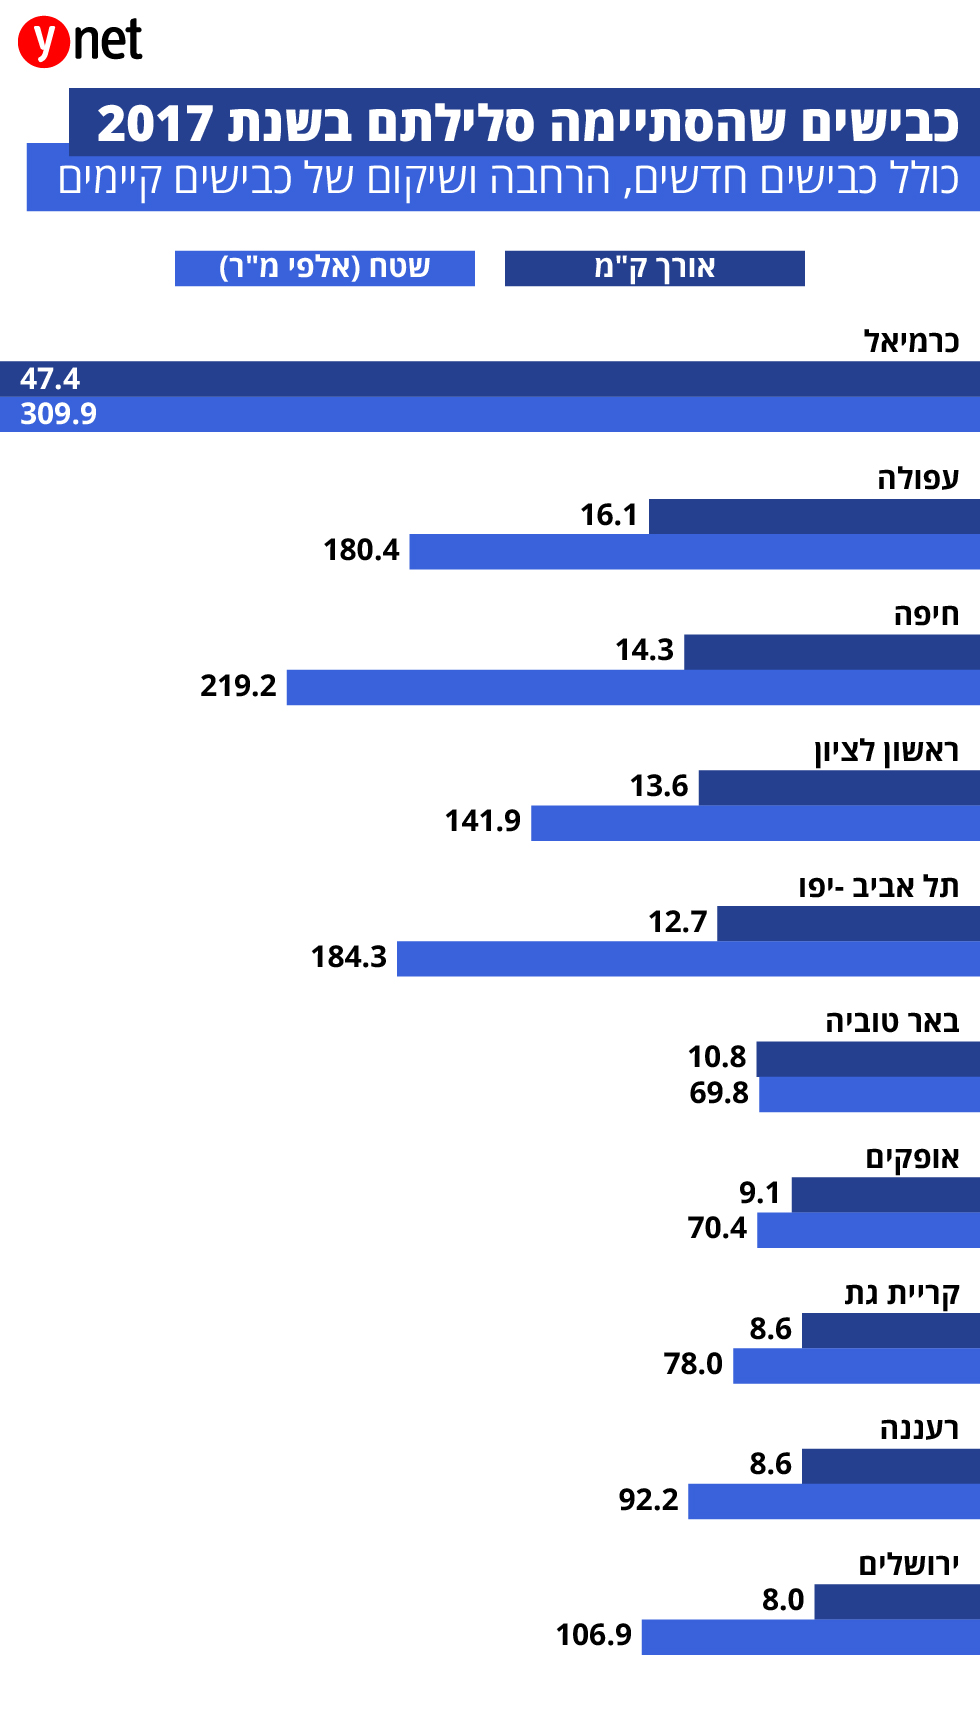     (נתונים: עיבוד ynet של נתוני הלשכה המרכזית לסטטיסטיקה)